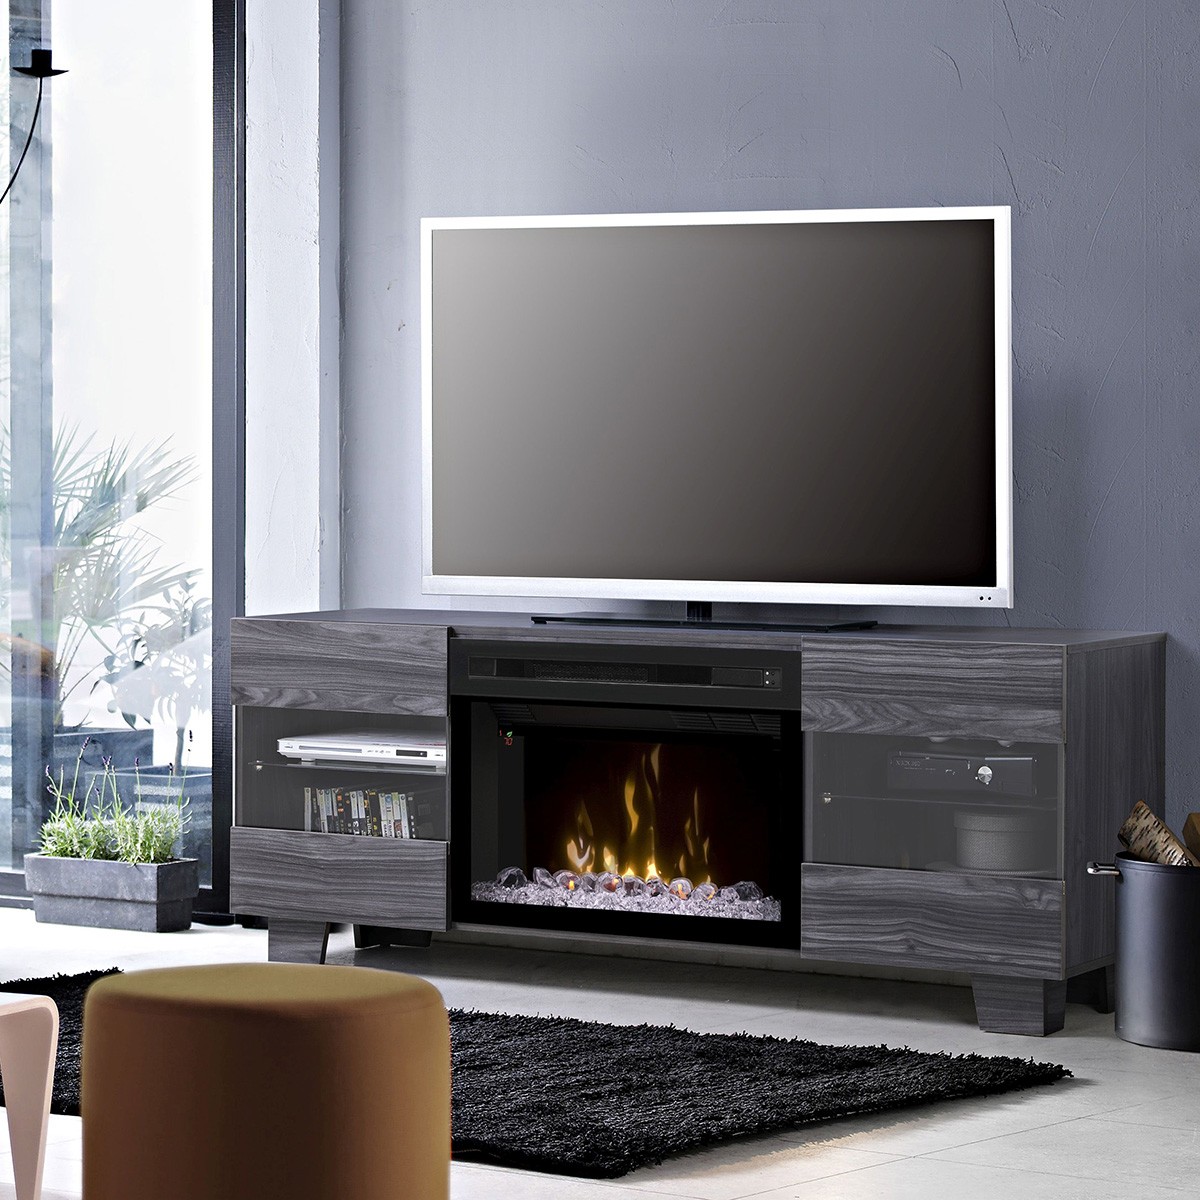 Dimplex Max 62 Electric Fireplace Tv, Dimplex Concord Tv Stand With Electric Fireplace